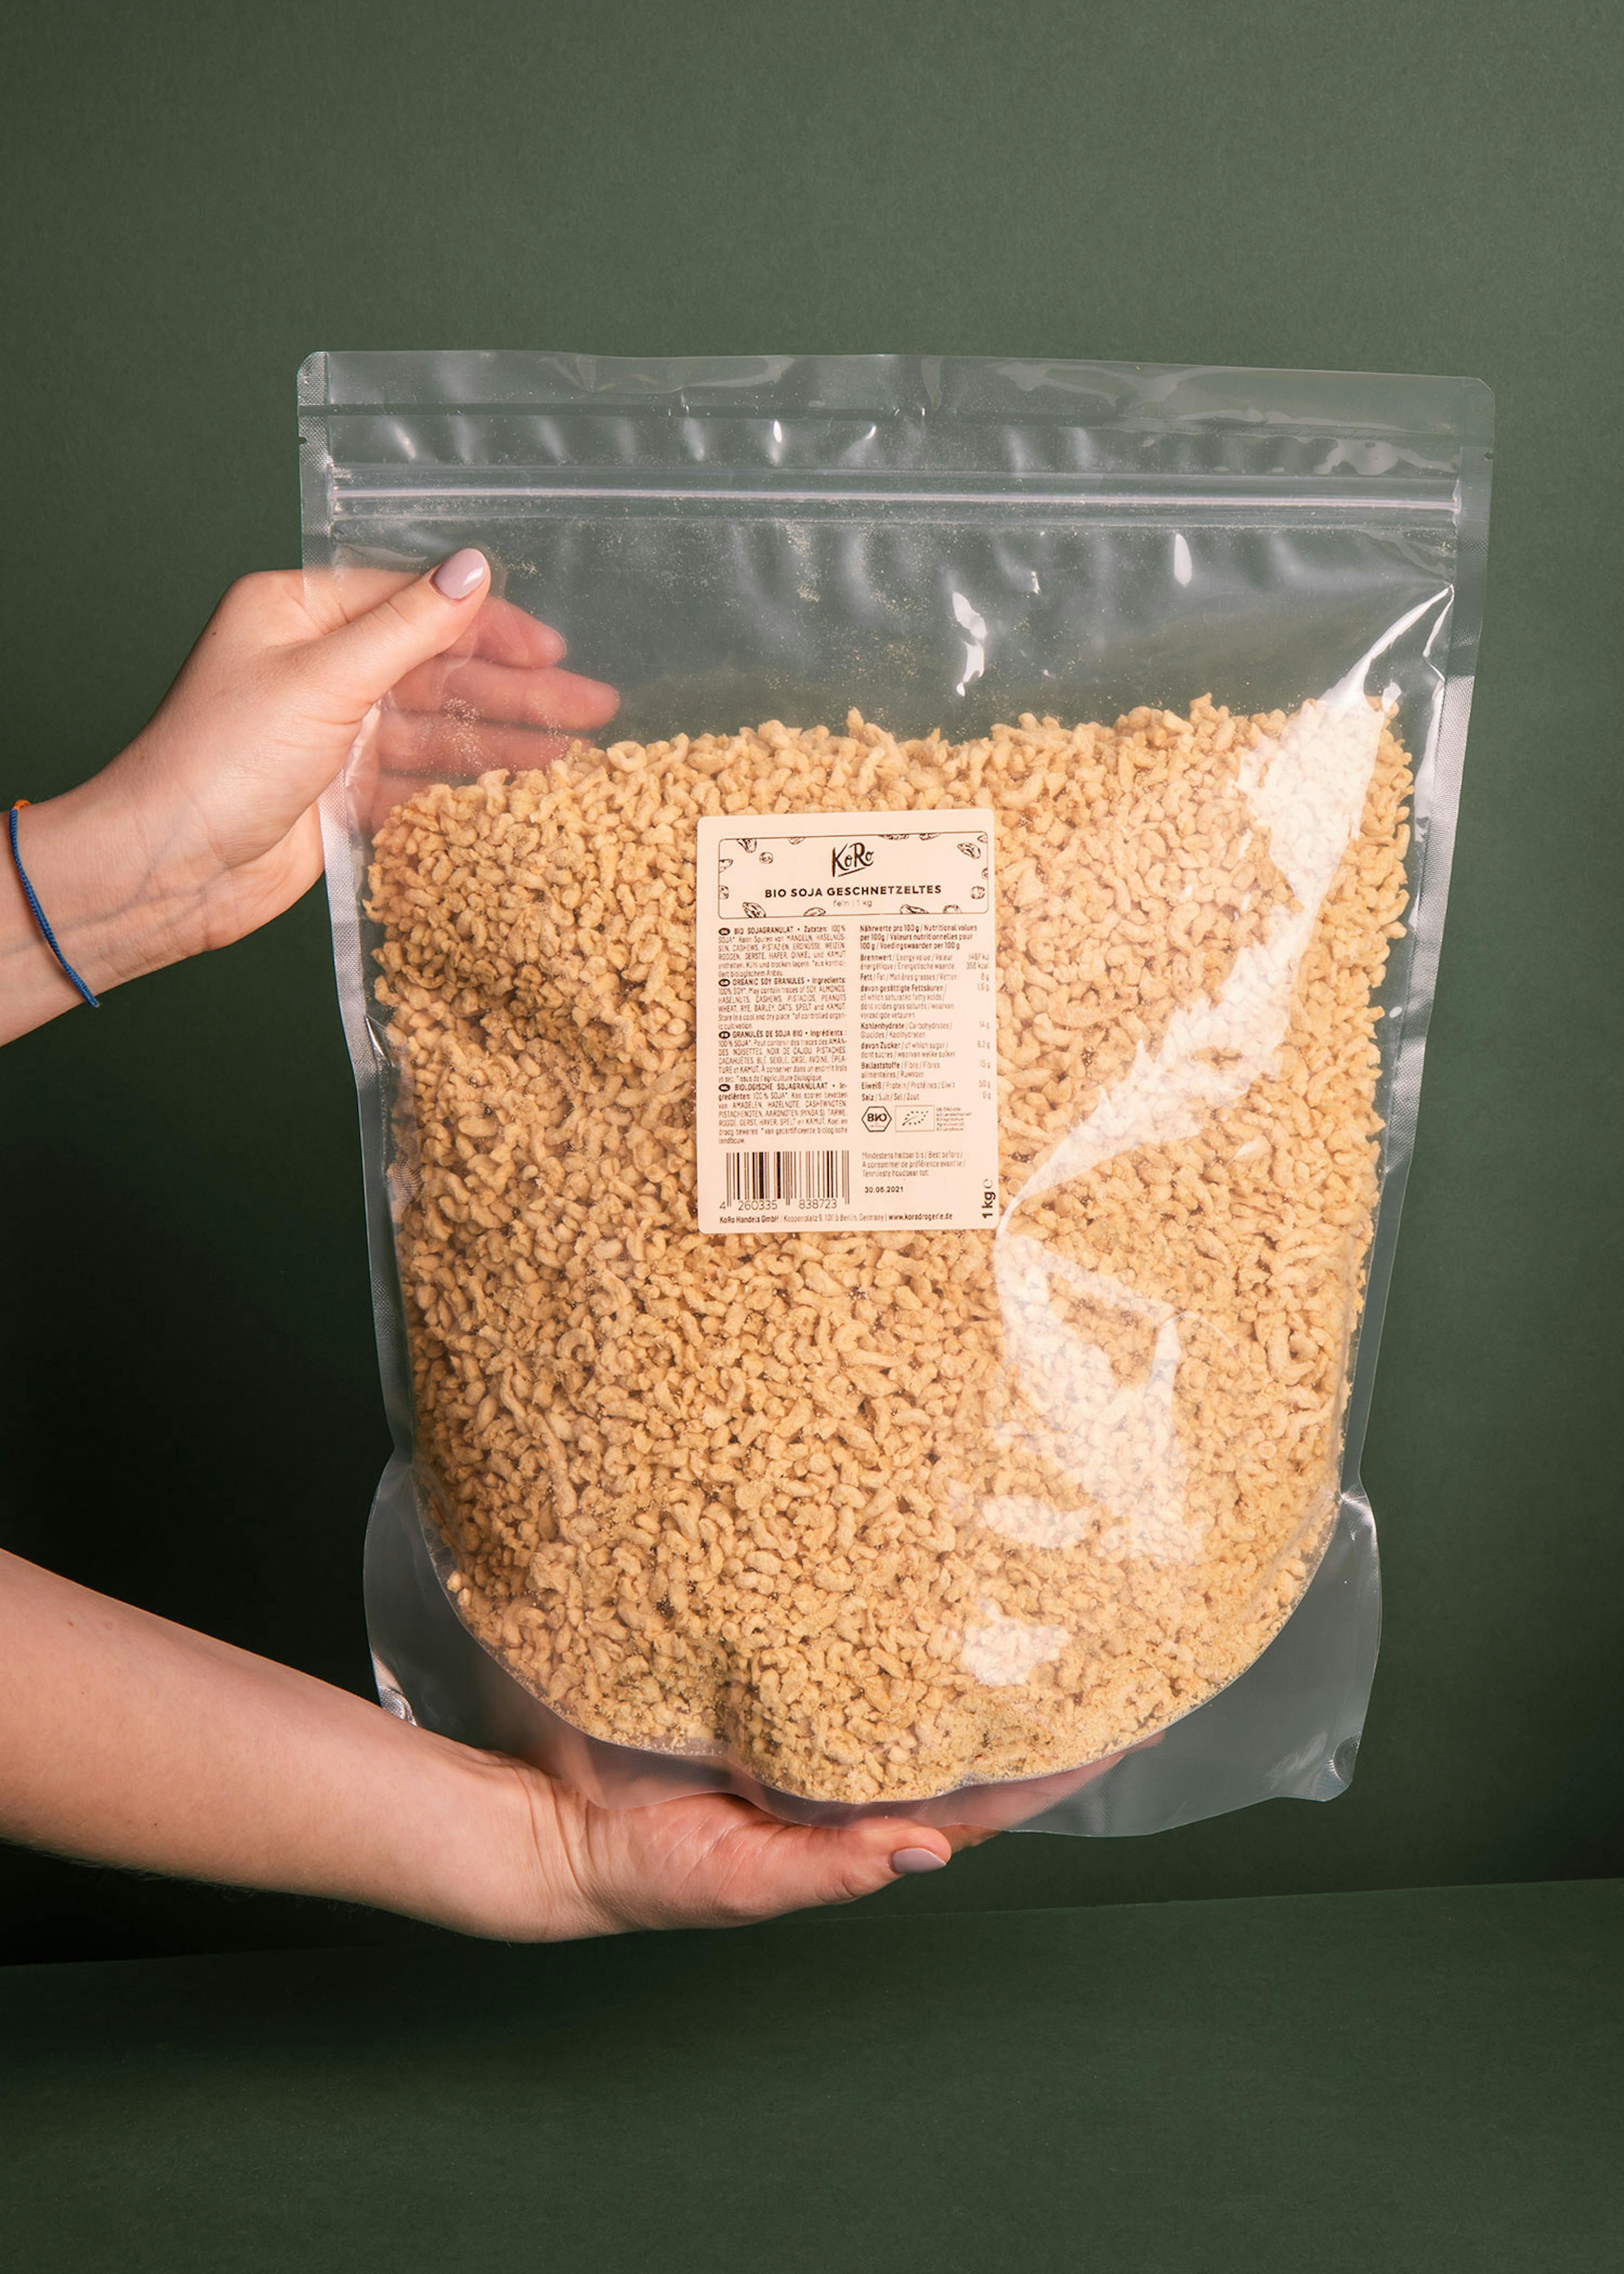 Gros émincés de soja bio 1 kg - 100% soja - Vegan